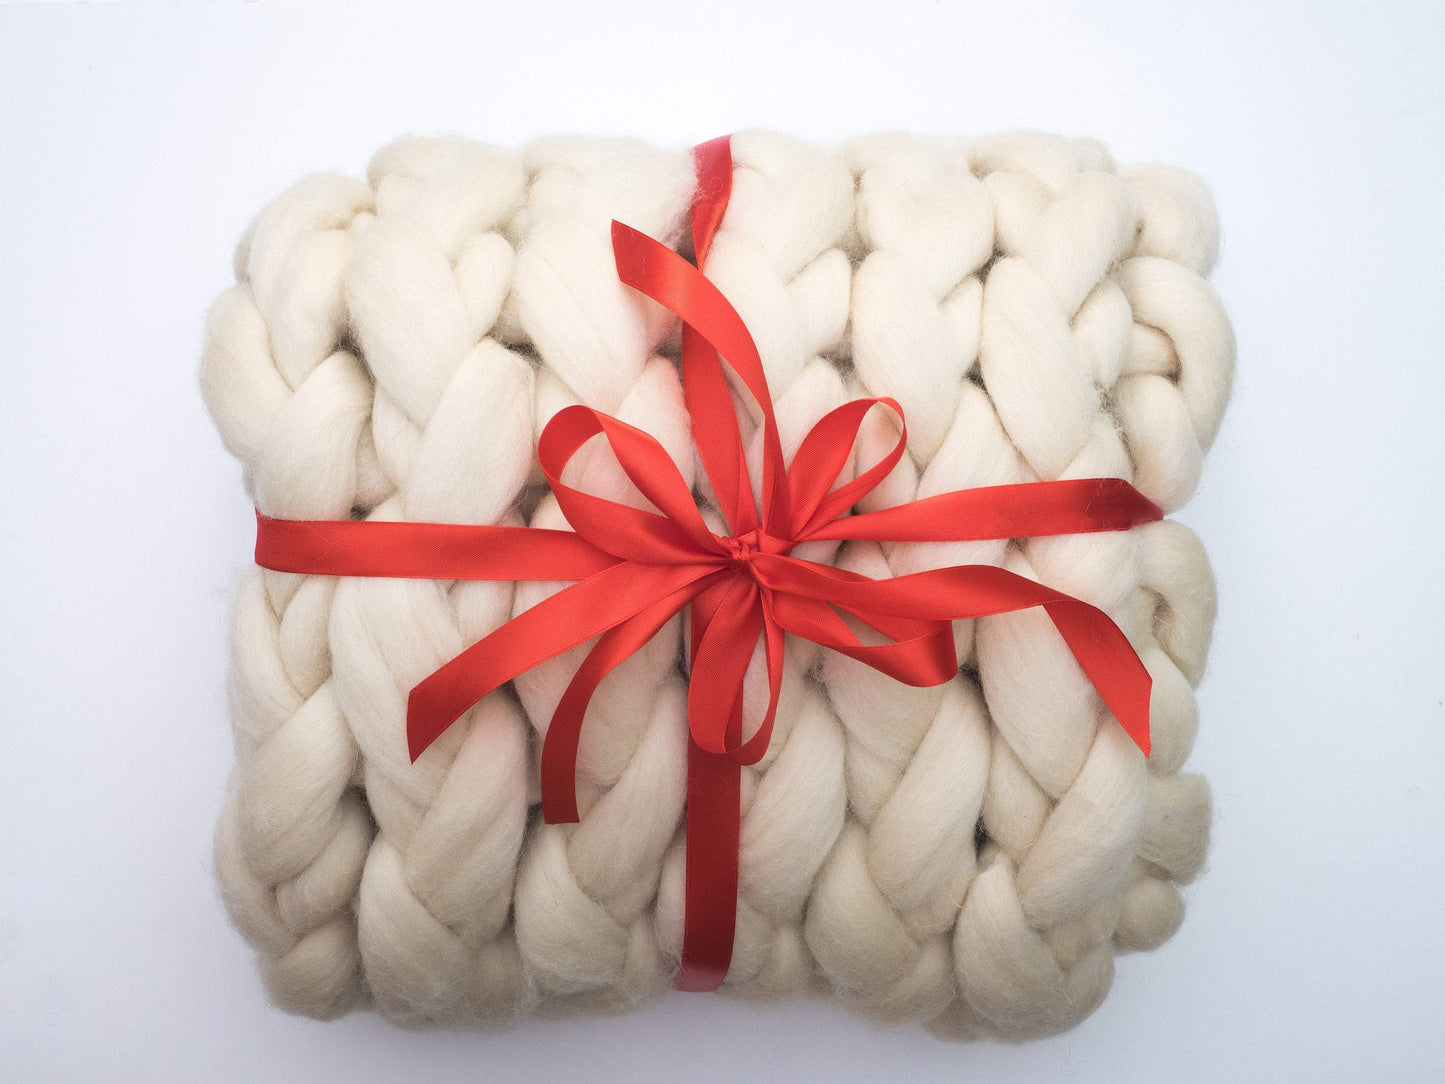 Chunky Knit Blanket Merino Throw Blanket -Super Chunky Knit Merino Wool 40" x 60" Throw Blanket Giant Knit, Bulky Blanket Perfect Gift!